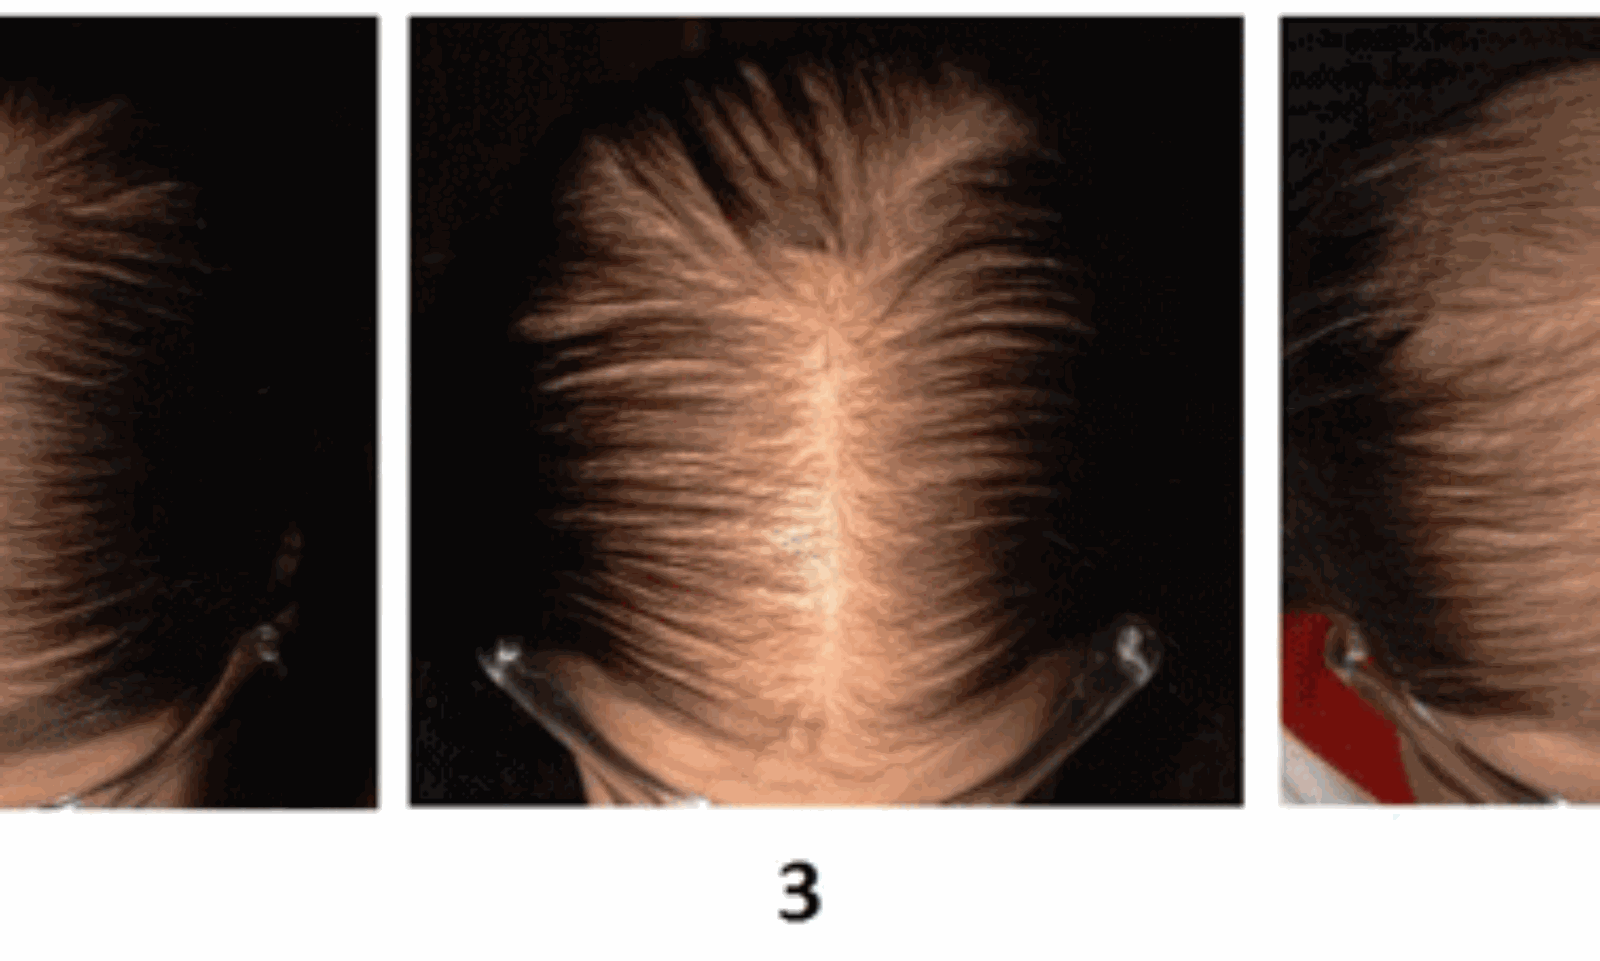 Hair Loss in Women  NEJM